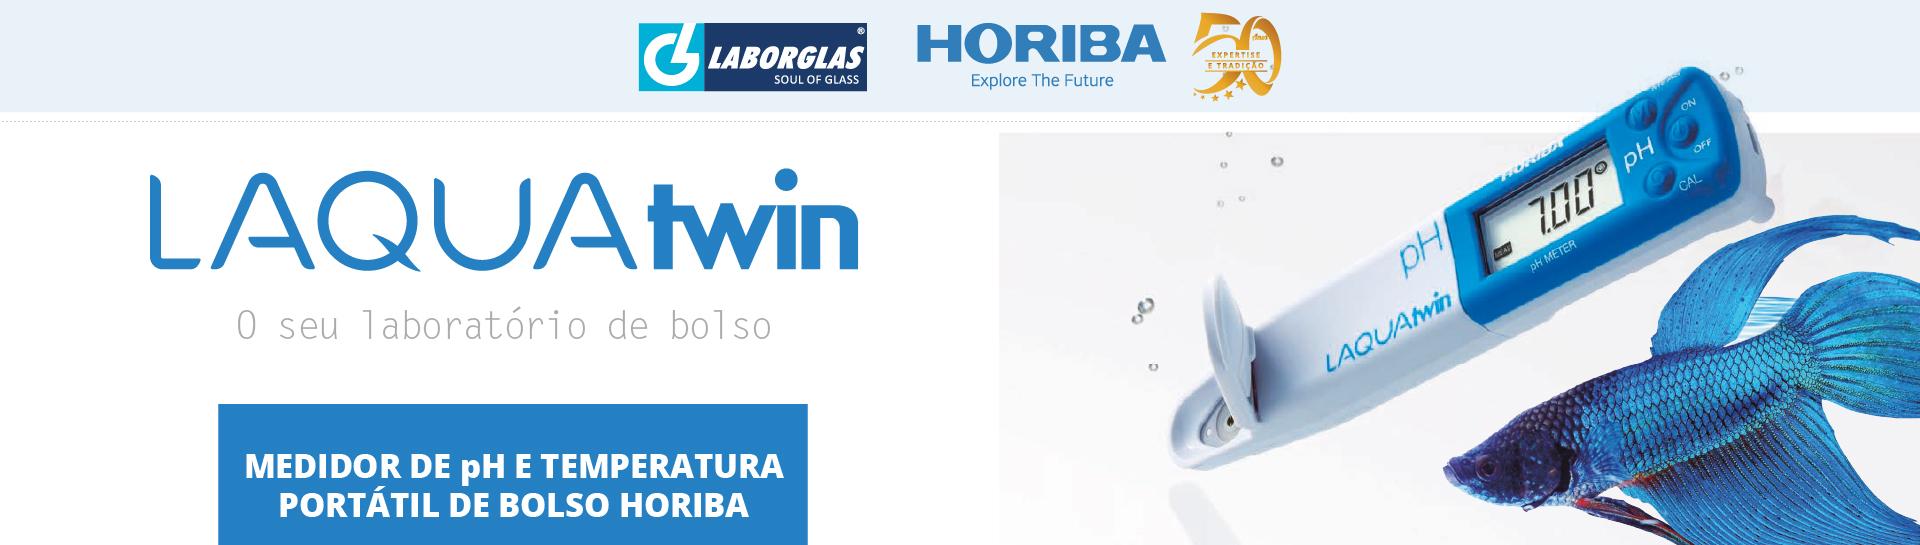 Horiba - A empresa Laborglas Indústria e Comércio de Vidrarias para Laboratório LTDA é uma empresa brasileira com atuação no mercado de vidraria...Saiba mais.